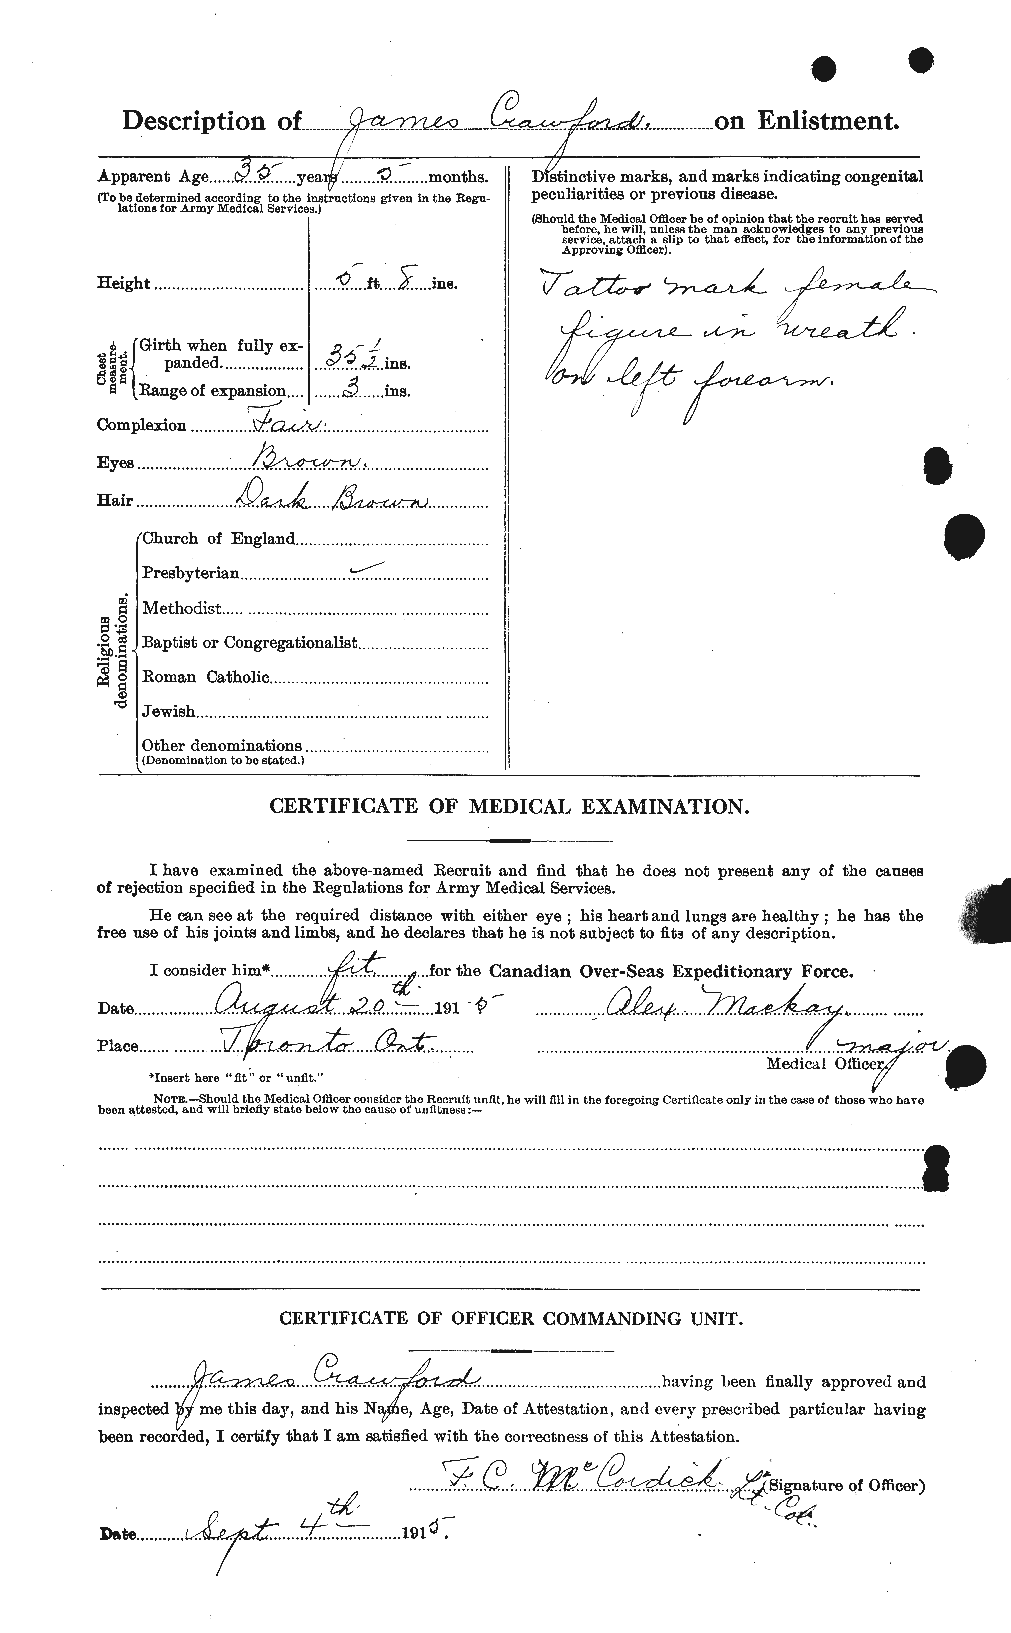 Dossiers du Personnel de la Première Guerre mondiale - CEC 062777b